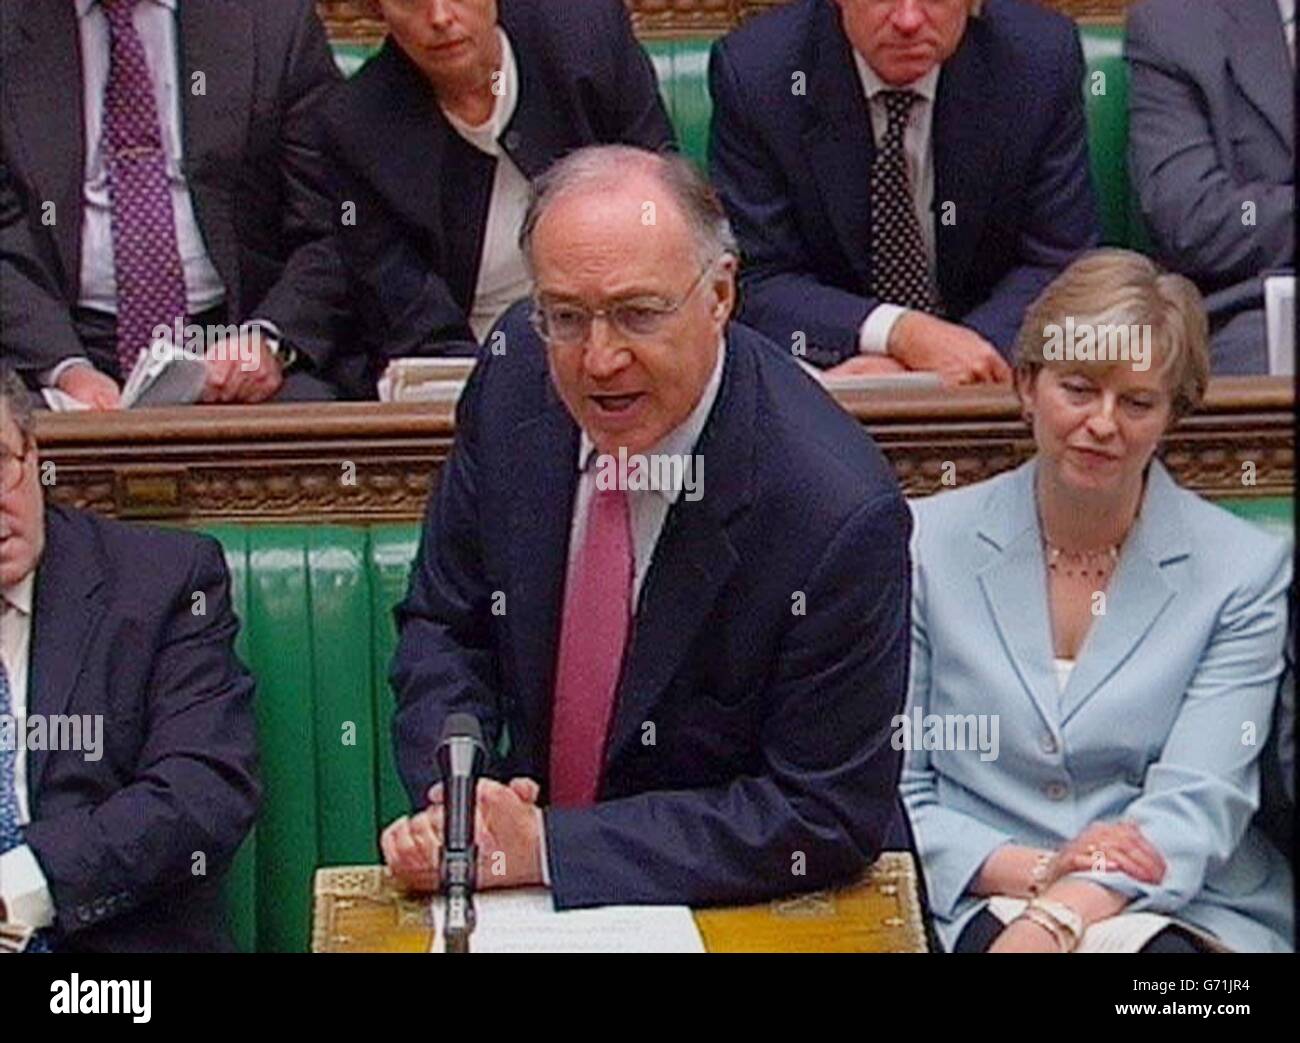 El líder conservador del Partido, Michael Howard, plantea una pregunta al primer Ministro Tony Blair en la Cámara de los comunes, durante las preguntas del primer Ministro. Foto de stock